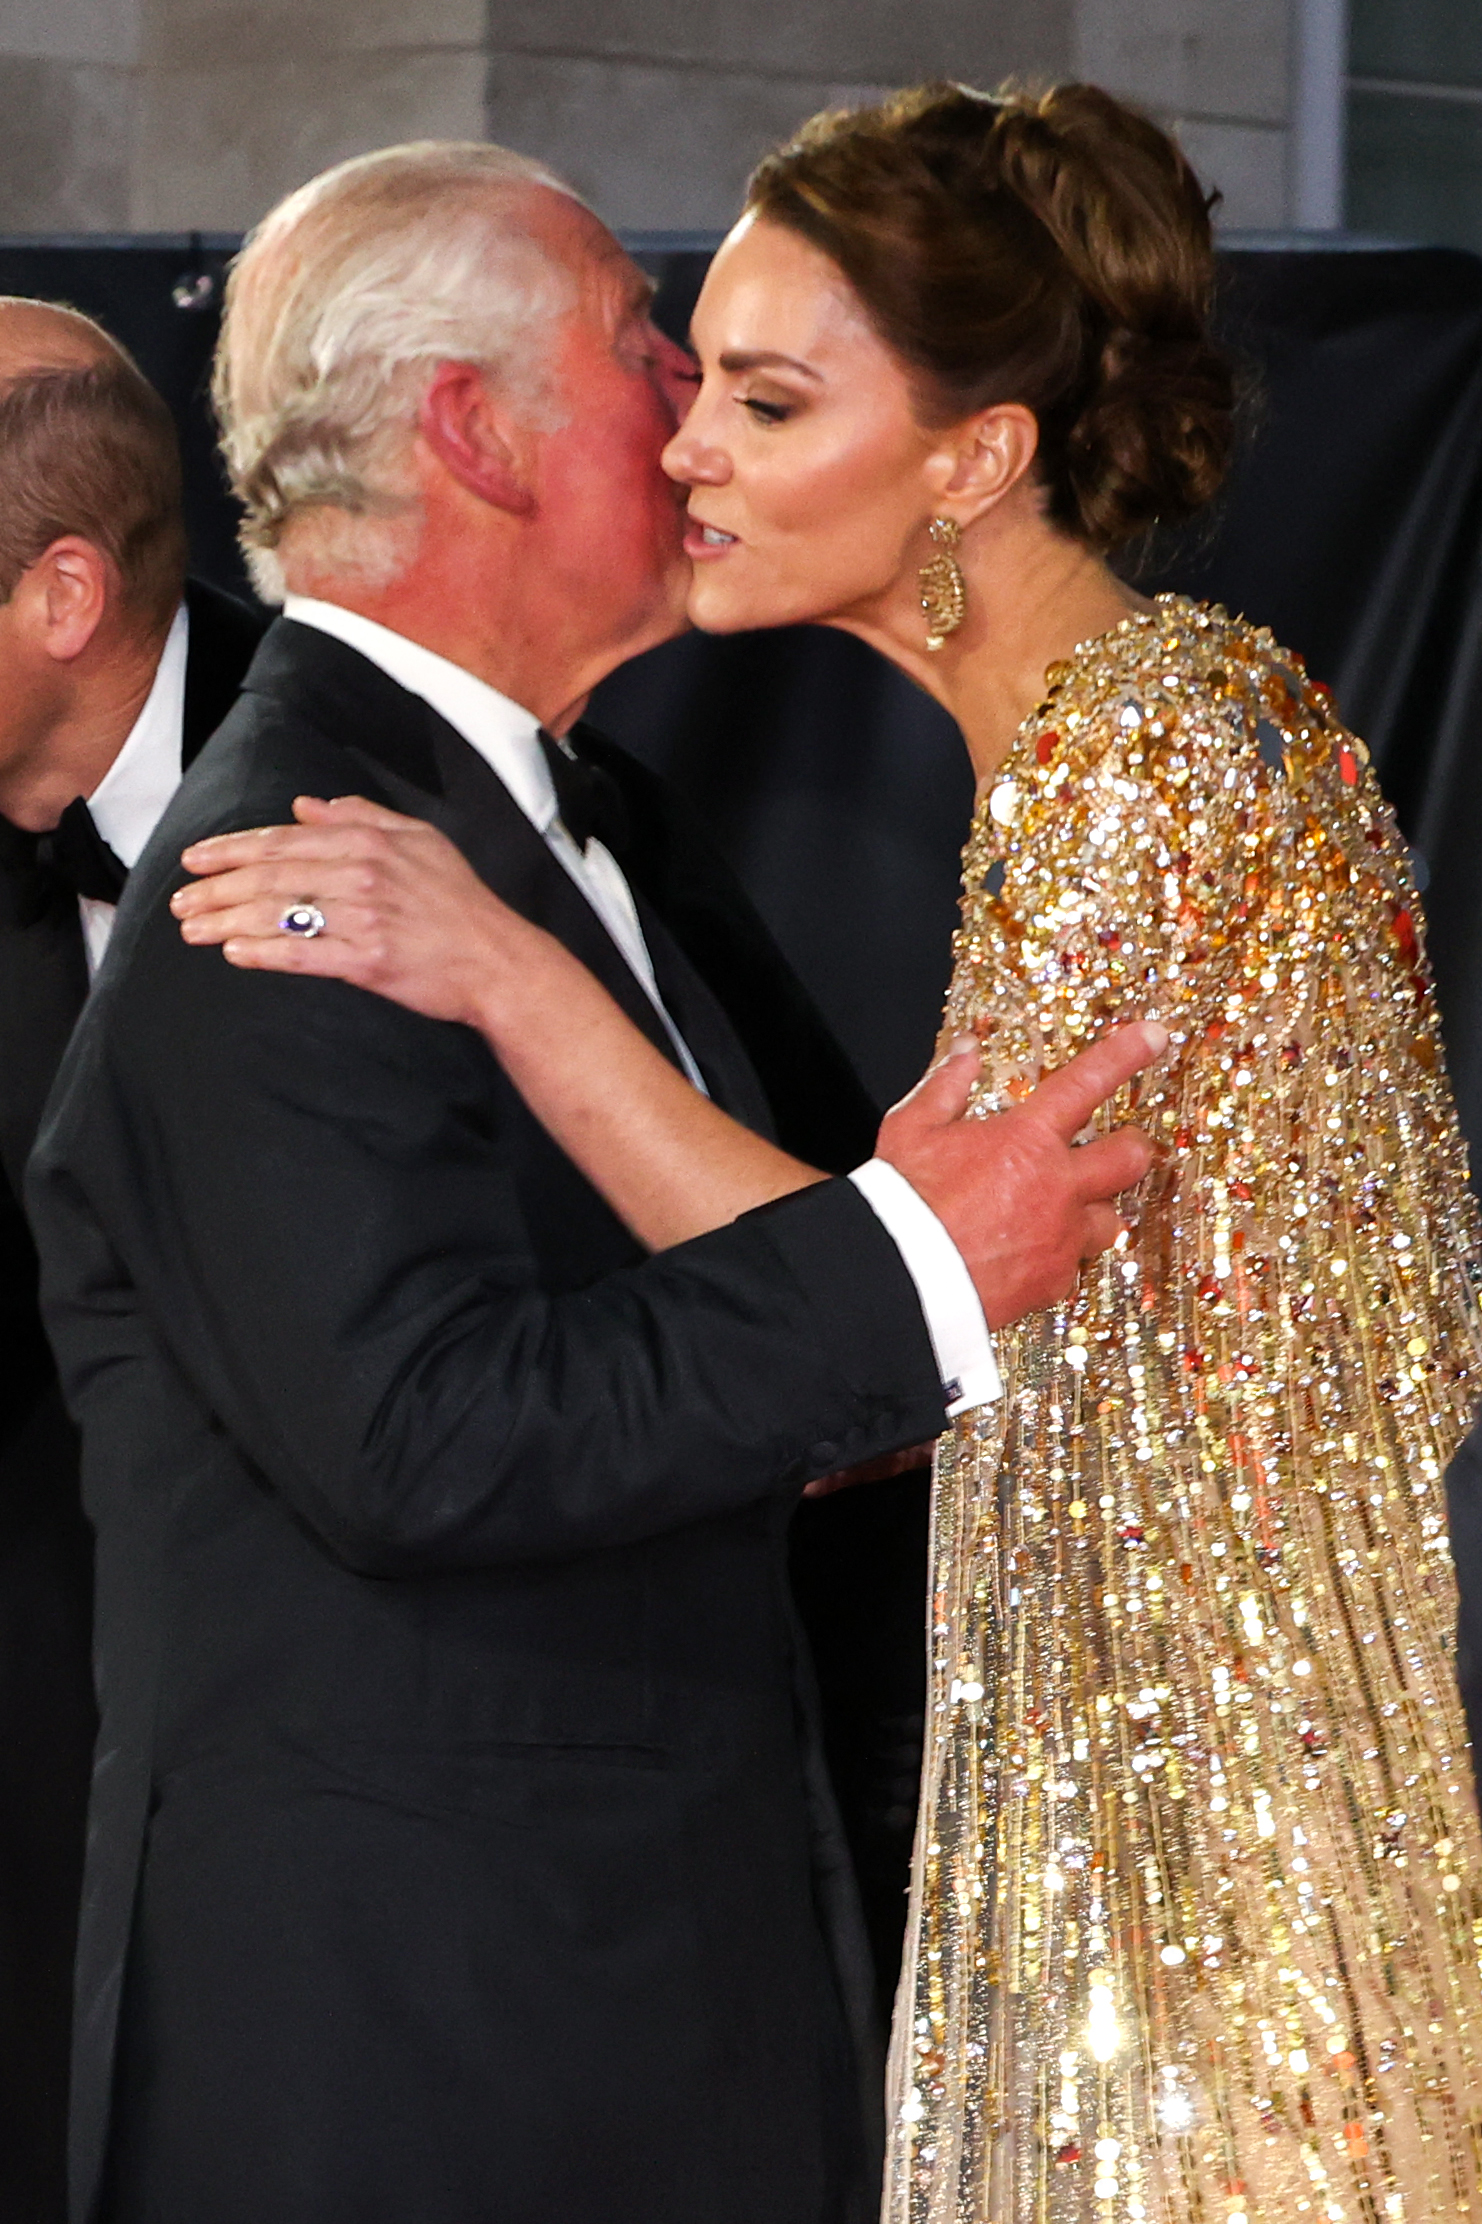 Le roi Charles III embrasse la princesse de Galles Kate Middleton lors de la première du film de James Bond 007 "Pas le temps de mourir" dans l'ouest de Londres, le 28 septembre 2021. | Source : Getty Images